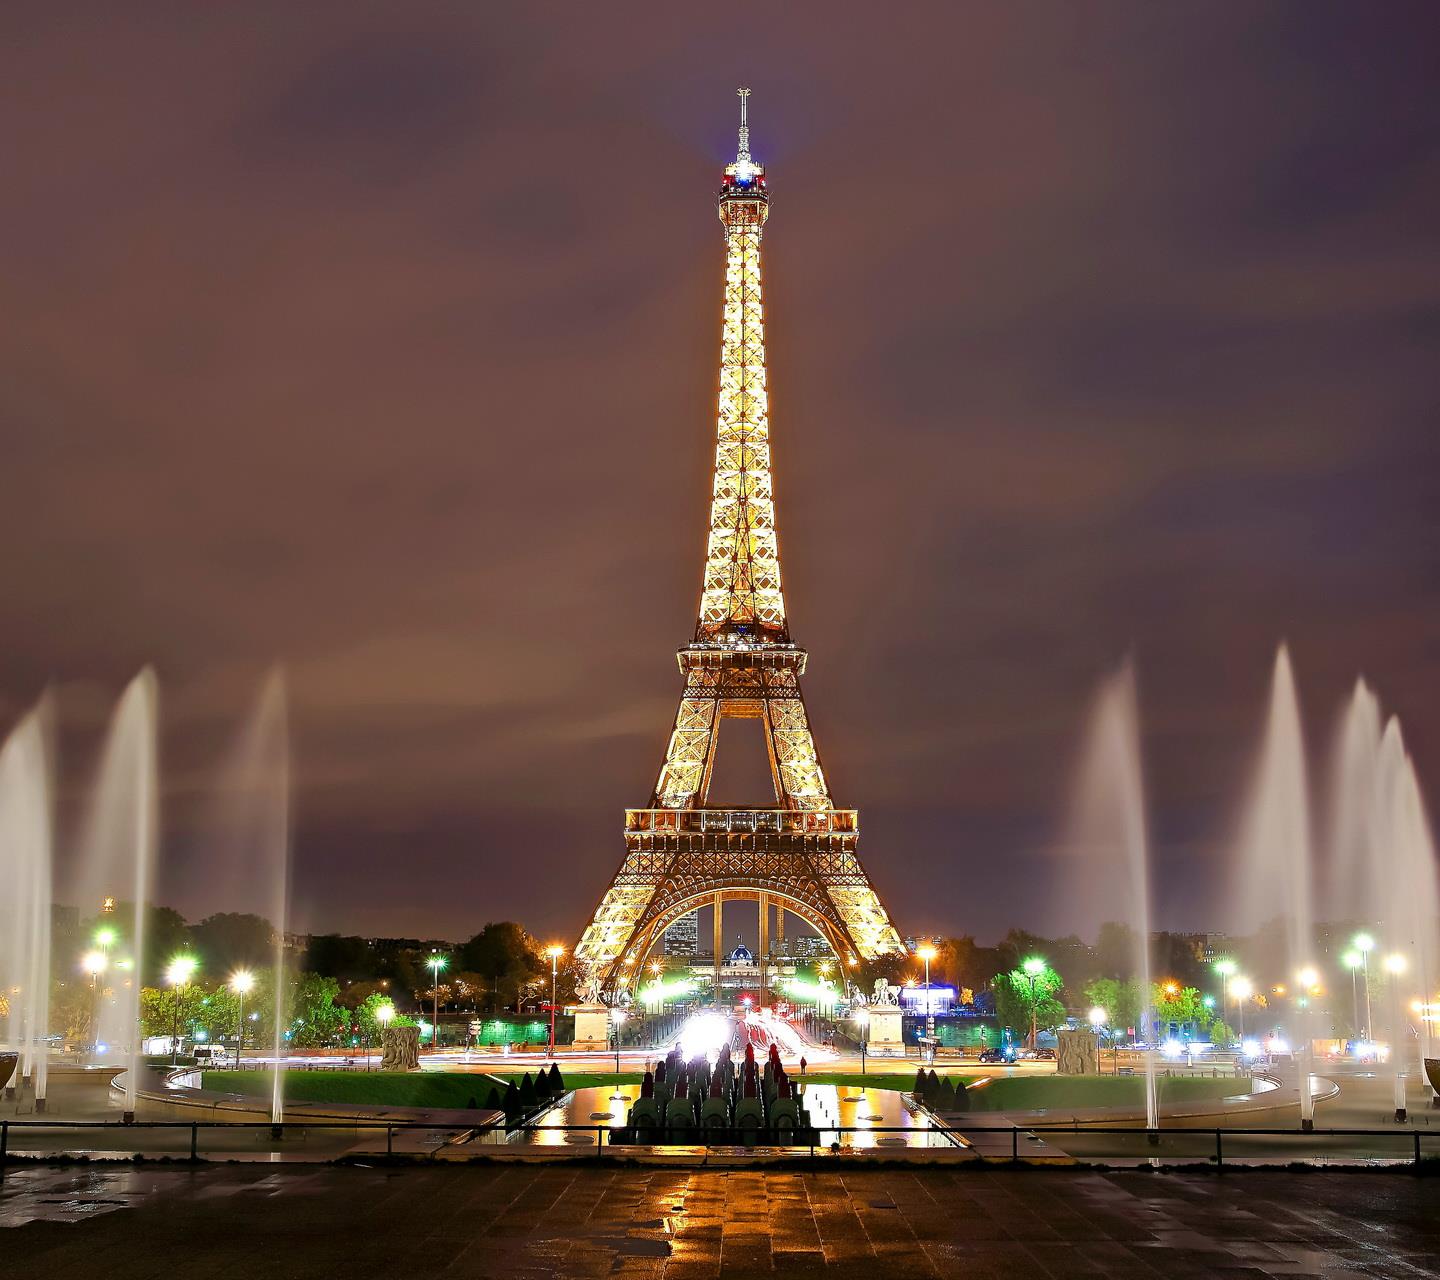 La torre Eiffel - Sfondi per Android, i più belli da scaricare gratis